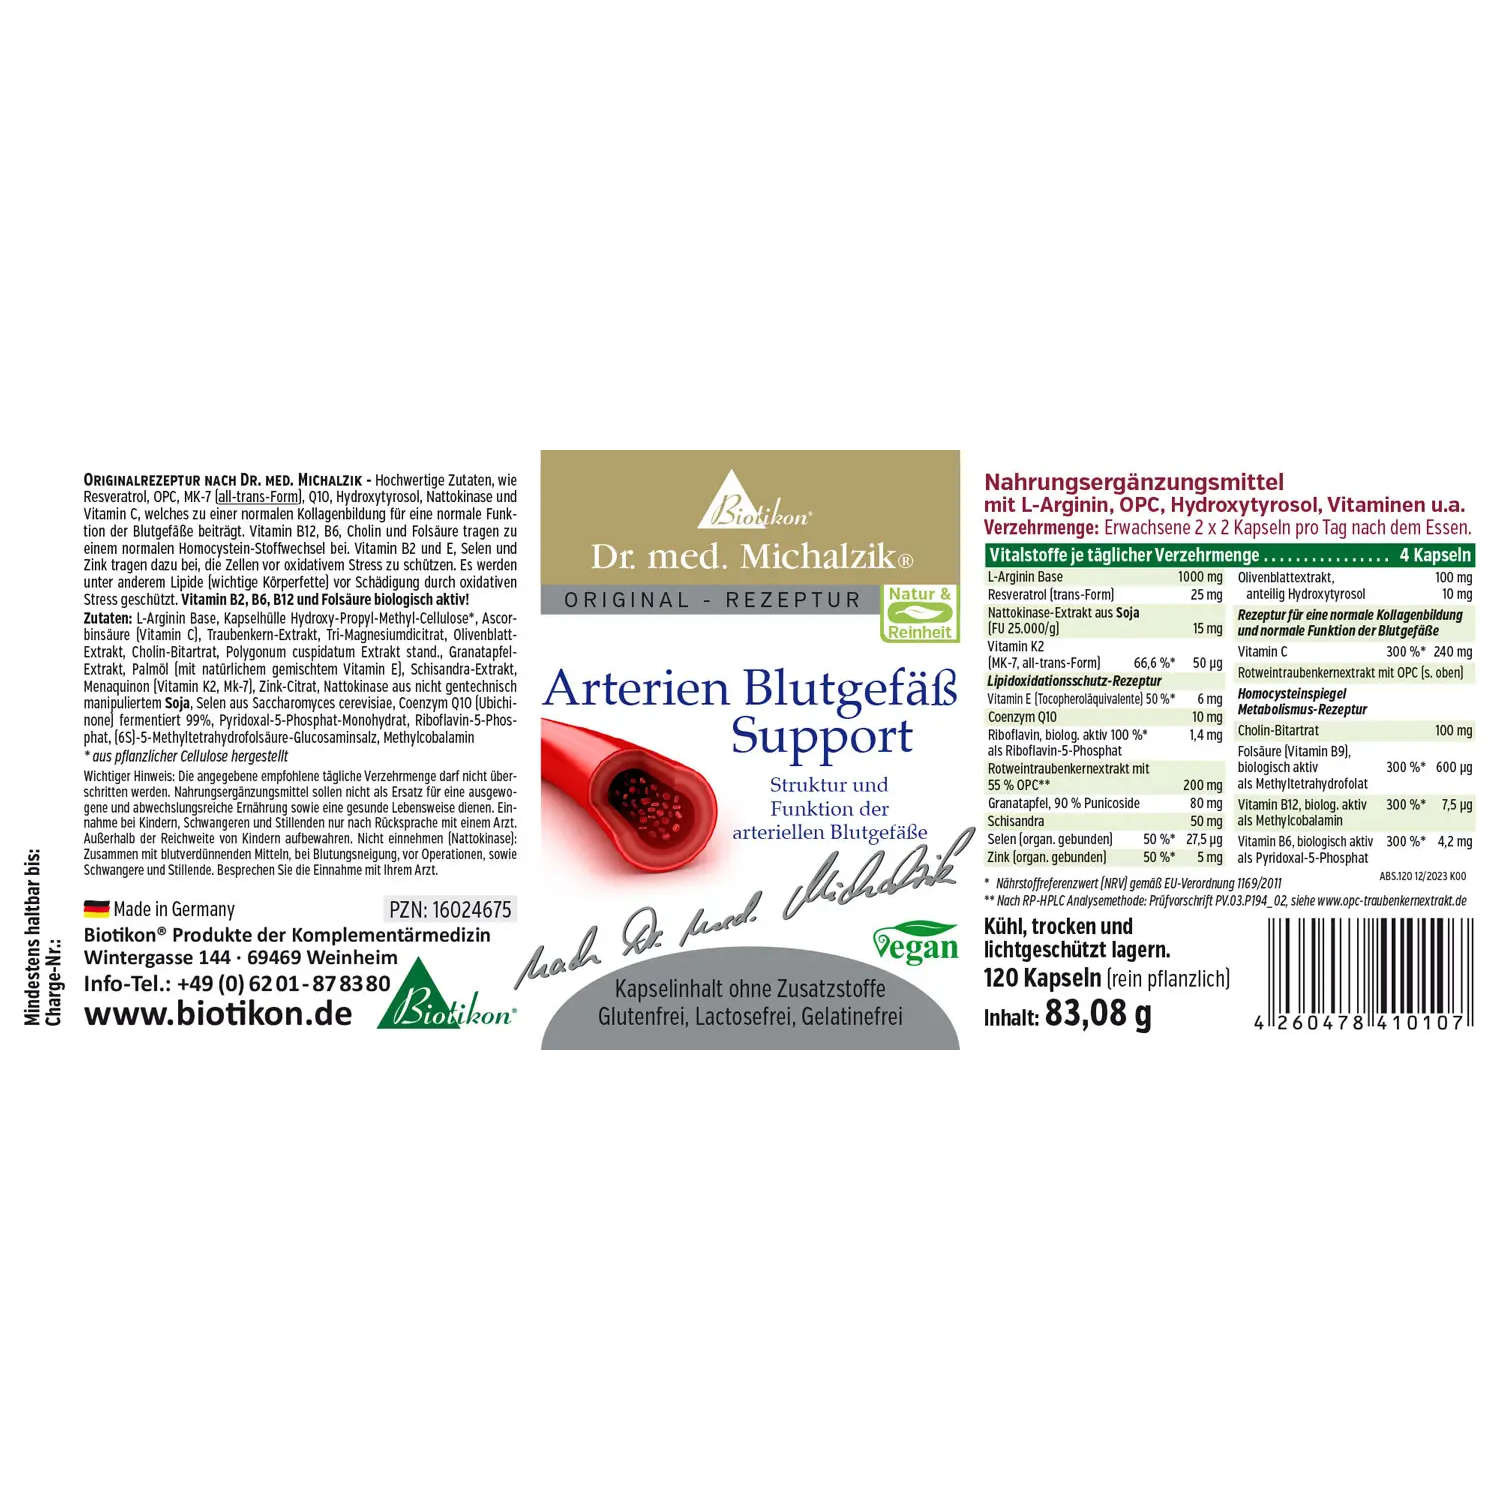 Arterien Blutgefäß Support von Biotikon - Etikett